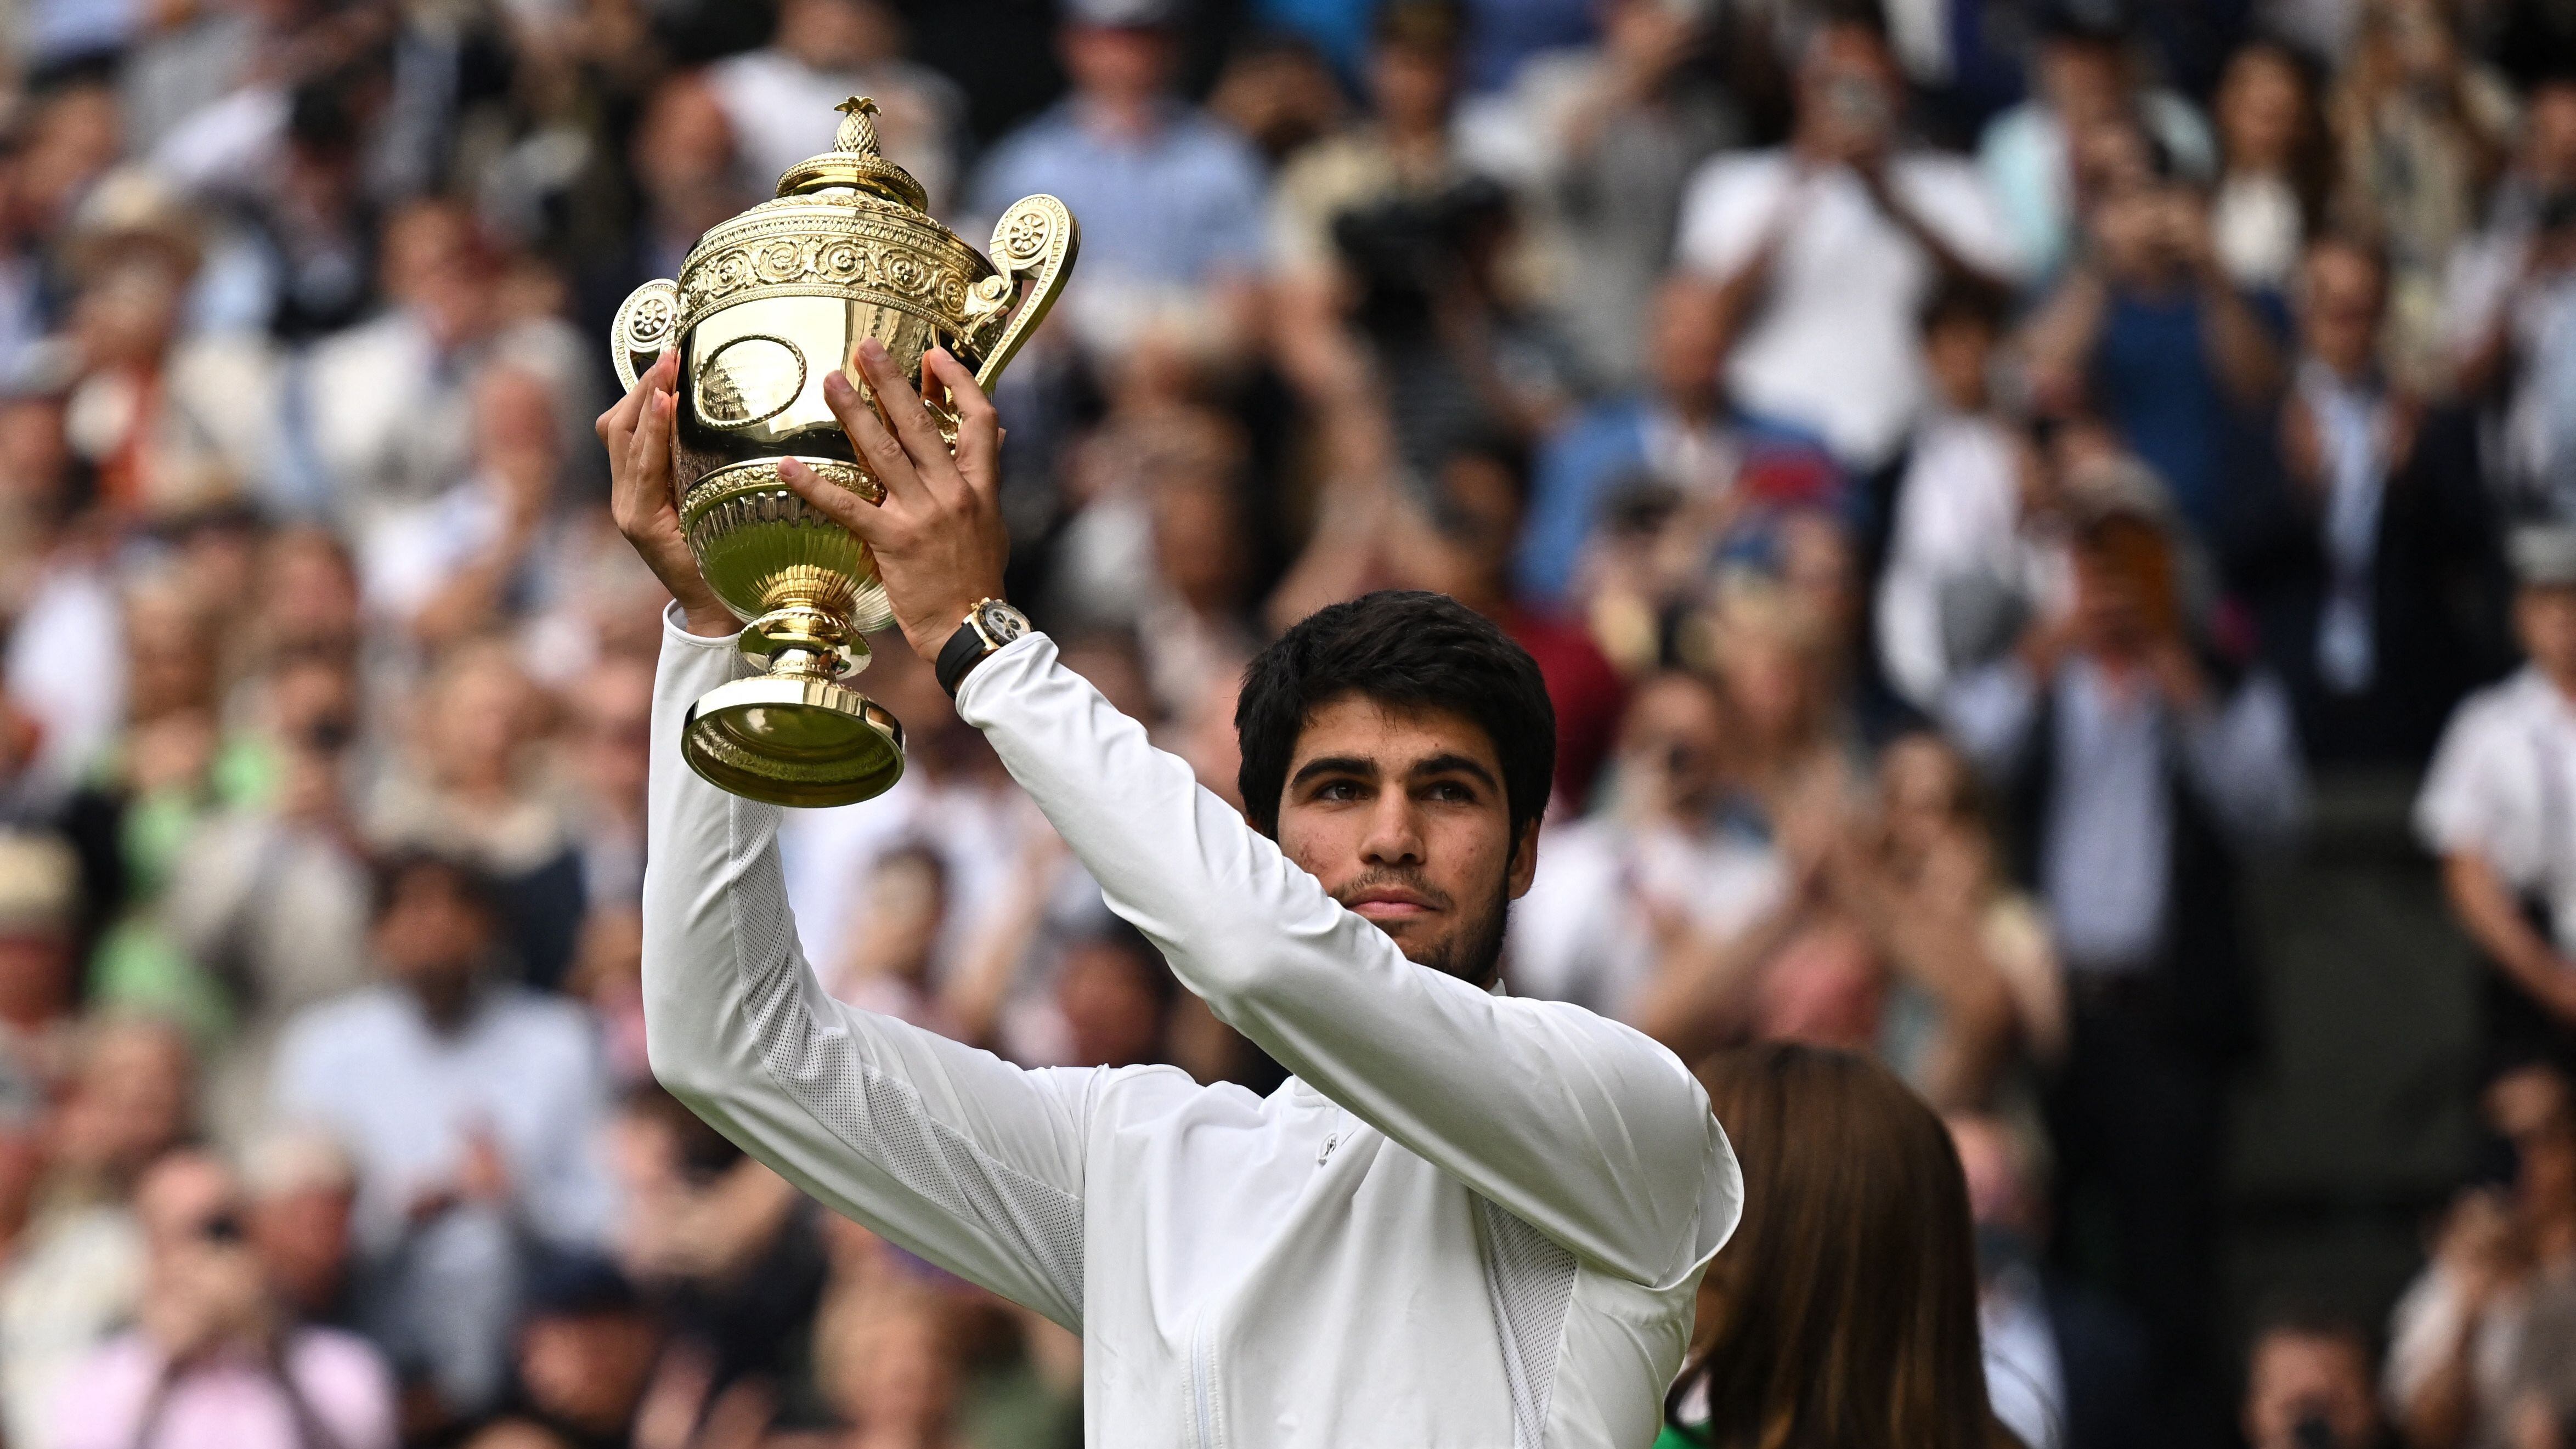 El espñaol Carlos Alcaraz celebra su victoria en Wimbledon y su segundo Grand Slam tras vencer a Novak Djokovic en la final. Archivo. (REUTERS/Dylan Martinez)